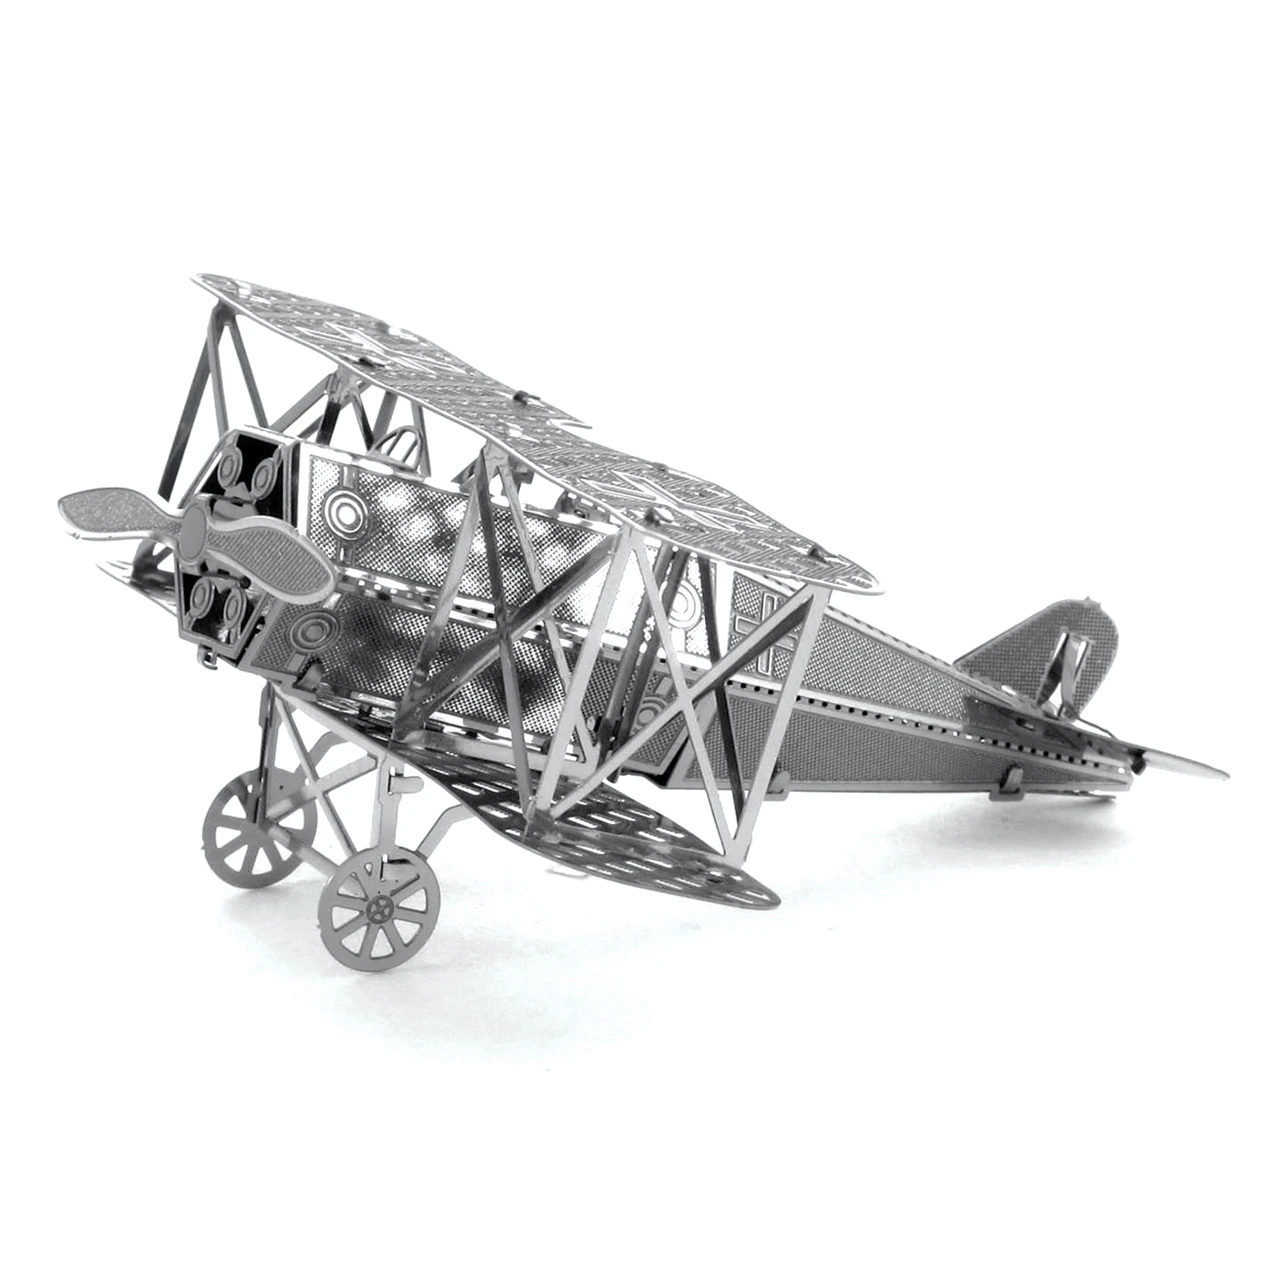 3D металлическая головоломка модель игрушка головоломка военная конструкция насекомое несколько моделей Набор DIY взрослых головоломки развития интеллекта - Цвет: Wing aircraft